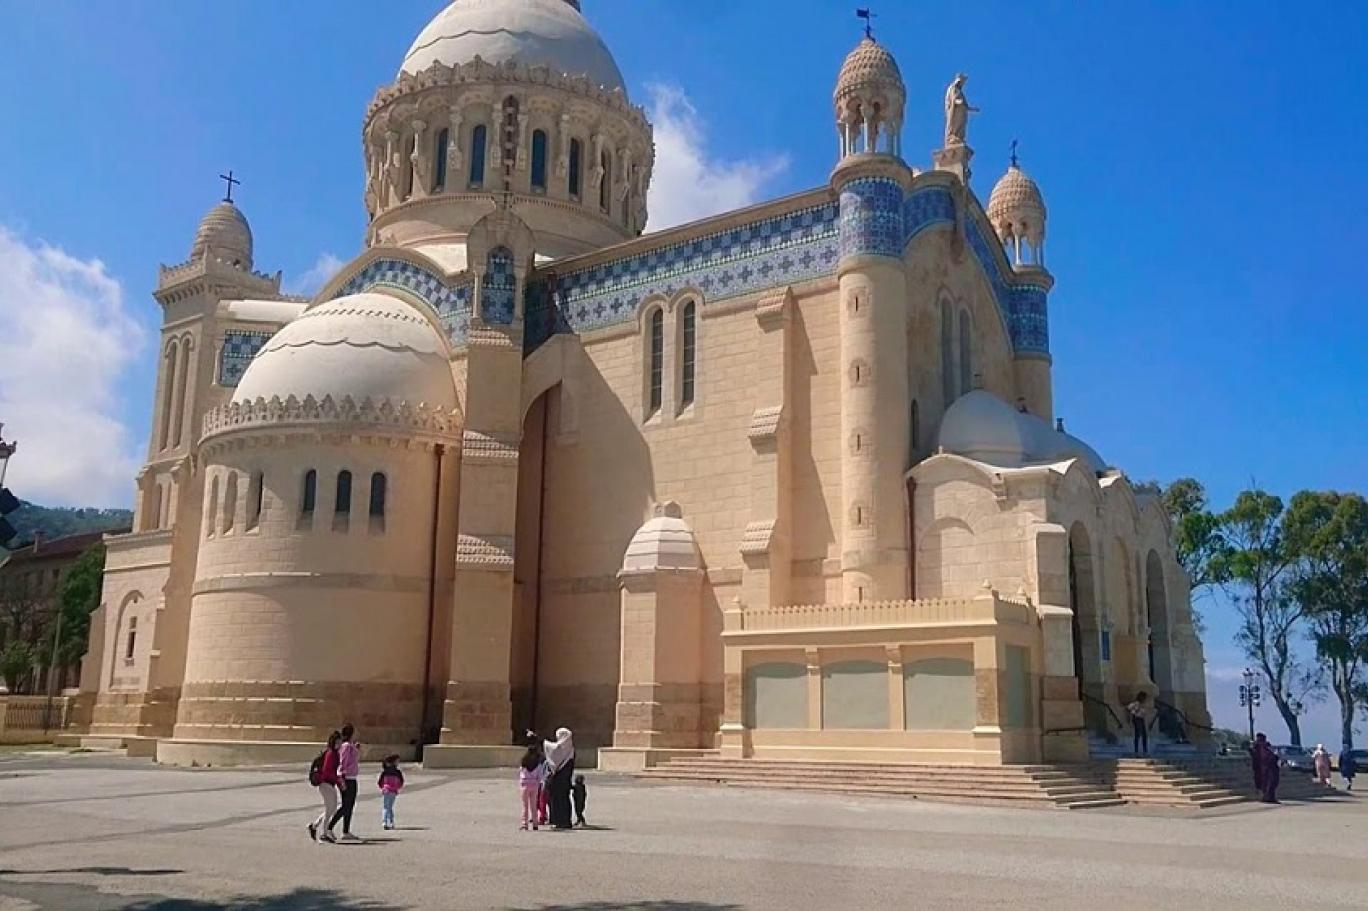 حرية العبادة لغير المسلمين تثير السجال في الجزائر